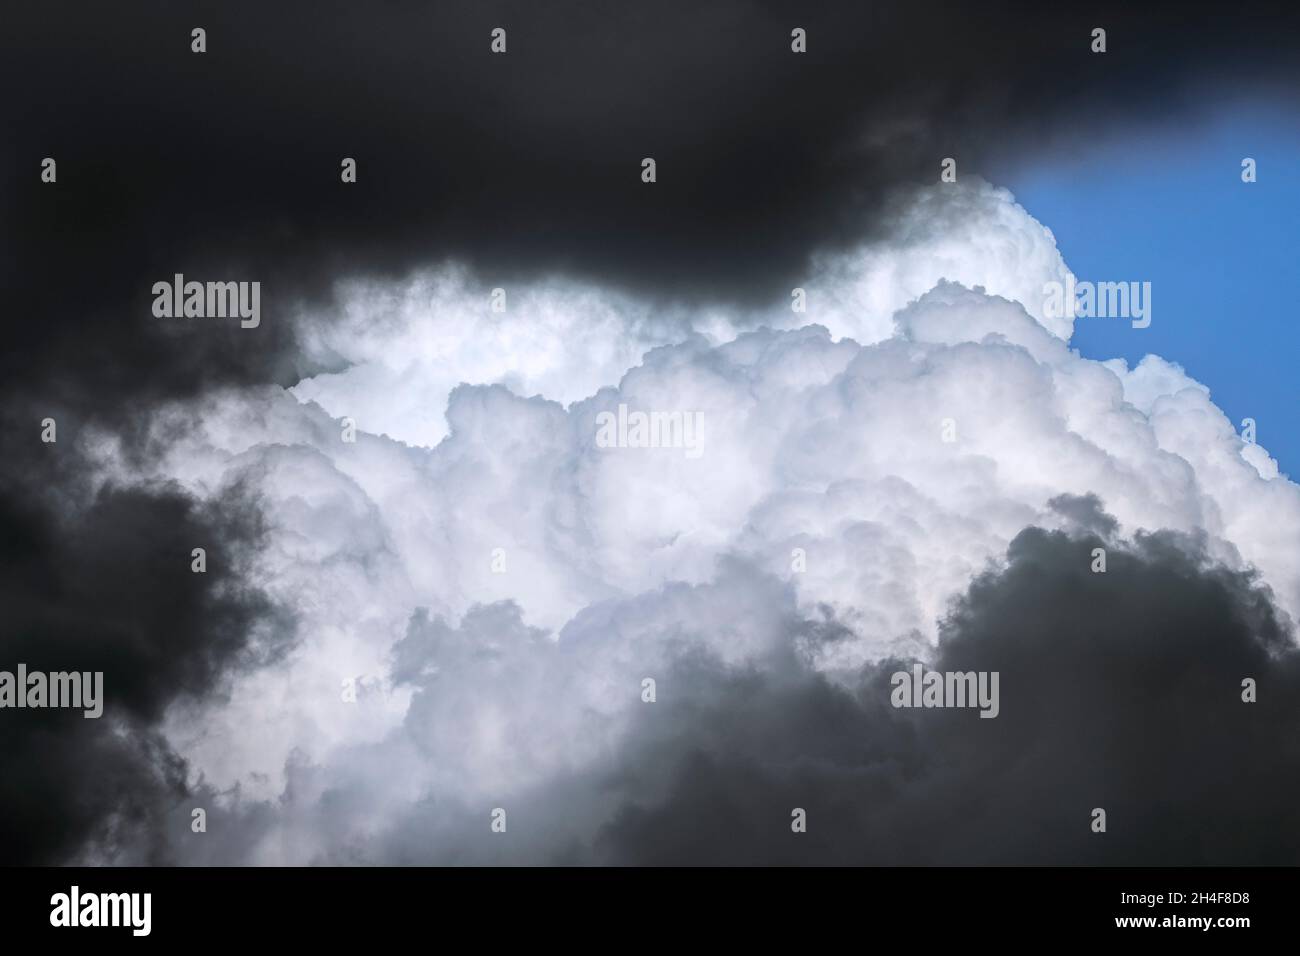 Dunkle bedrohliche Sturmwolken und Kumulus congestus Wolke / hoch aufragenden Kumulus entwickeln sich am Himmel Stockfoto